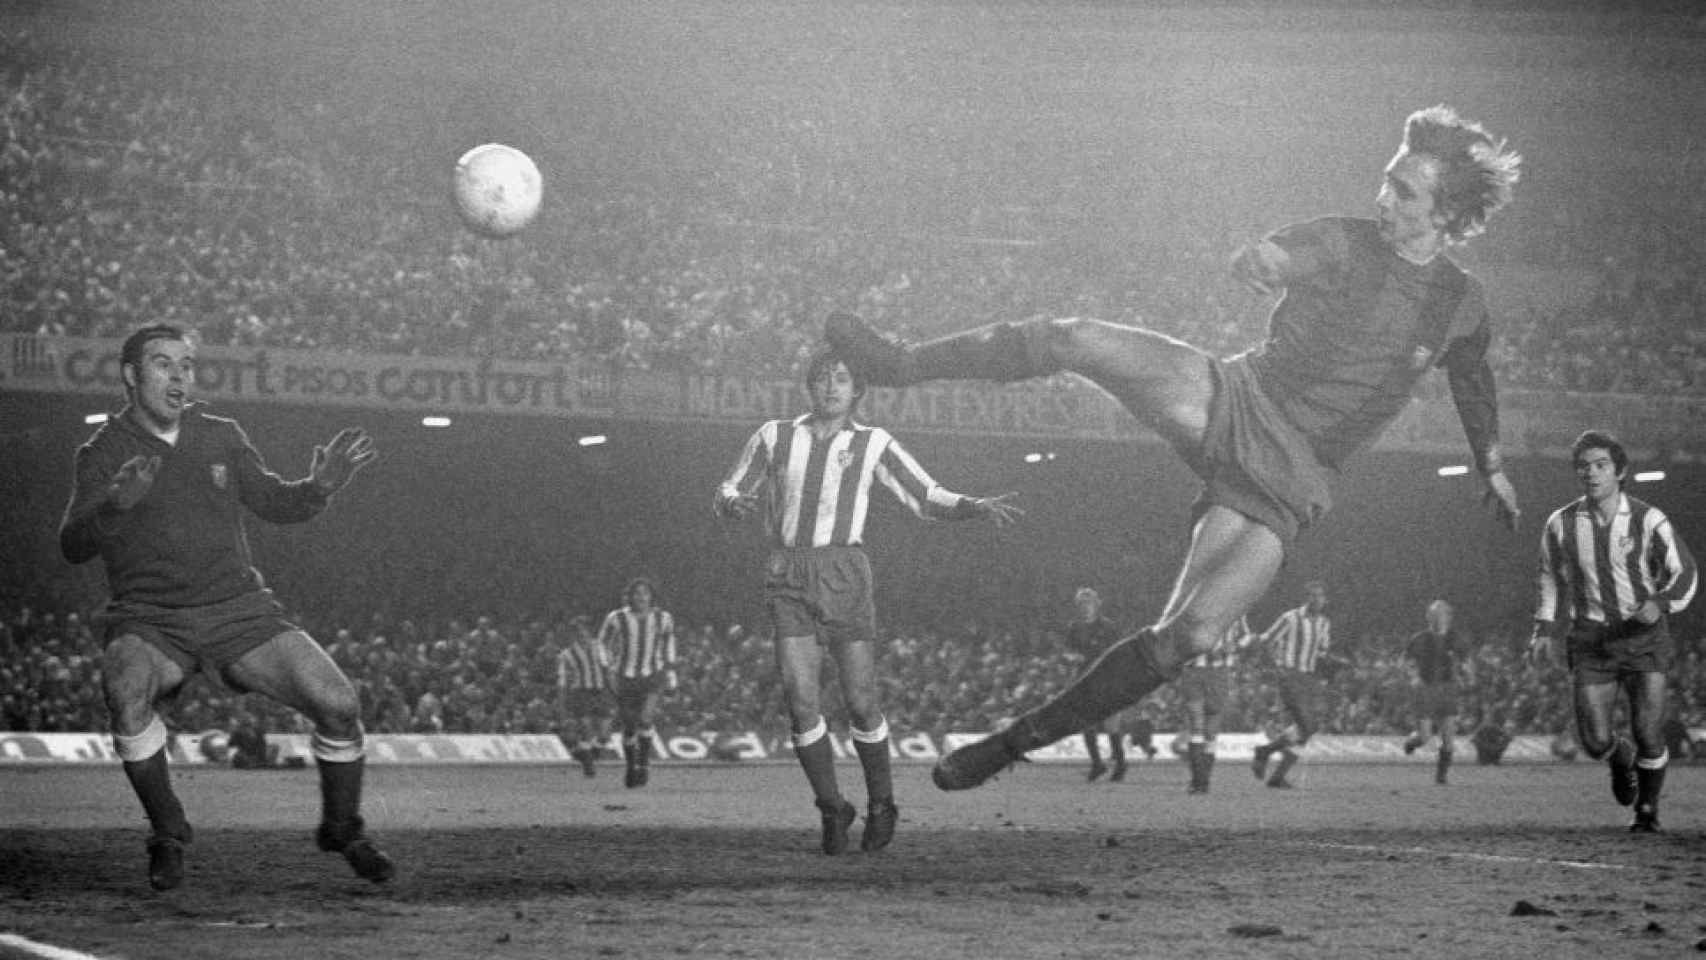 La acrobacia de Cruyff para marcar al Atlético de Madrid en 1973, históricamente atribuida a Horacio Seguí